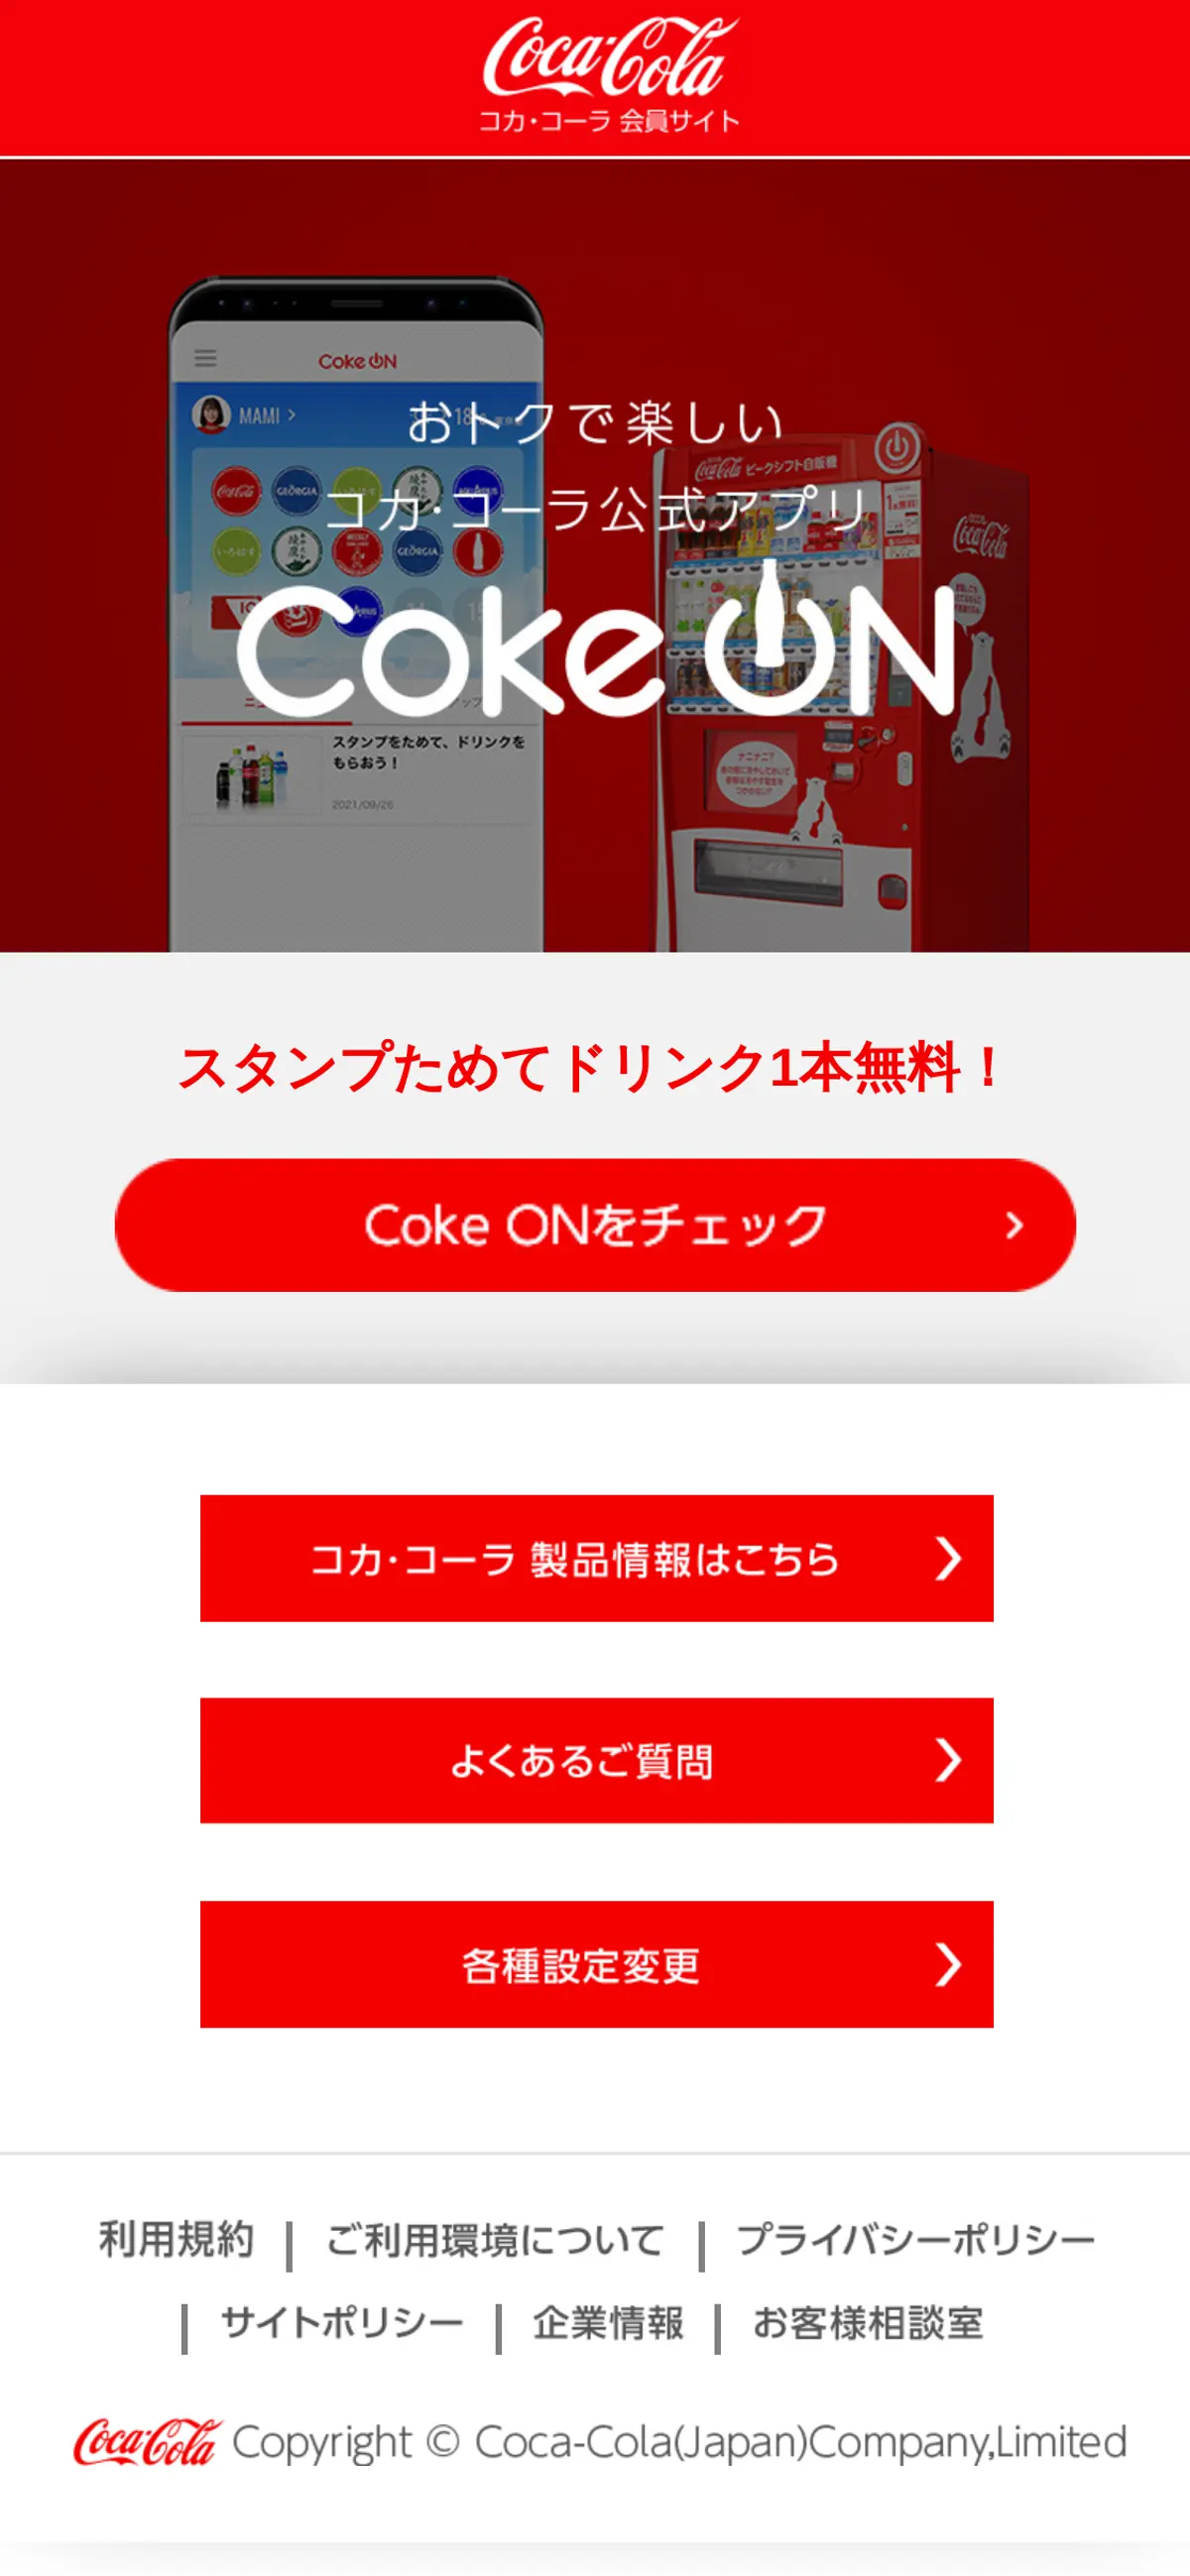 キャプチャ画面 会社名:日本コカ･コーラ株式会社プロジェクト名:Coke ON 画面名:B デバイス名:SPカテゴリ:なしタグ:B,SP